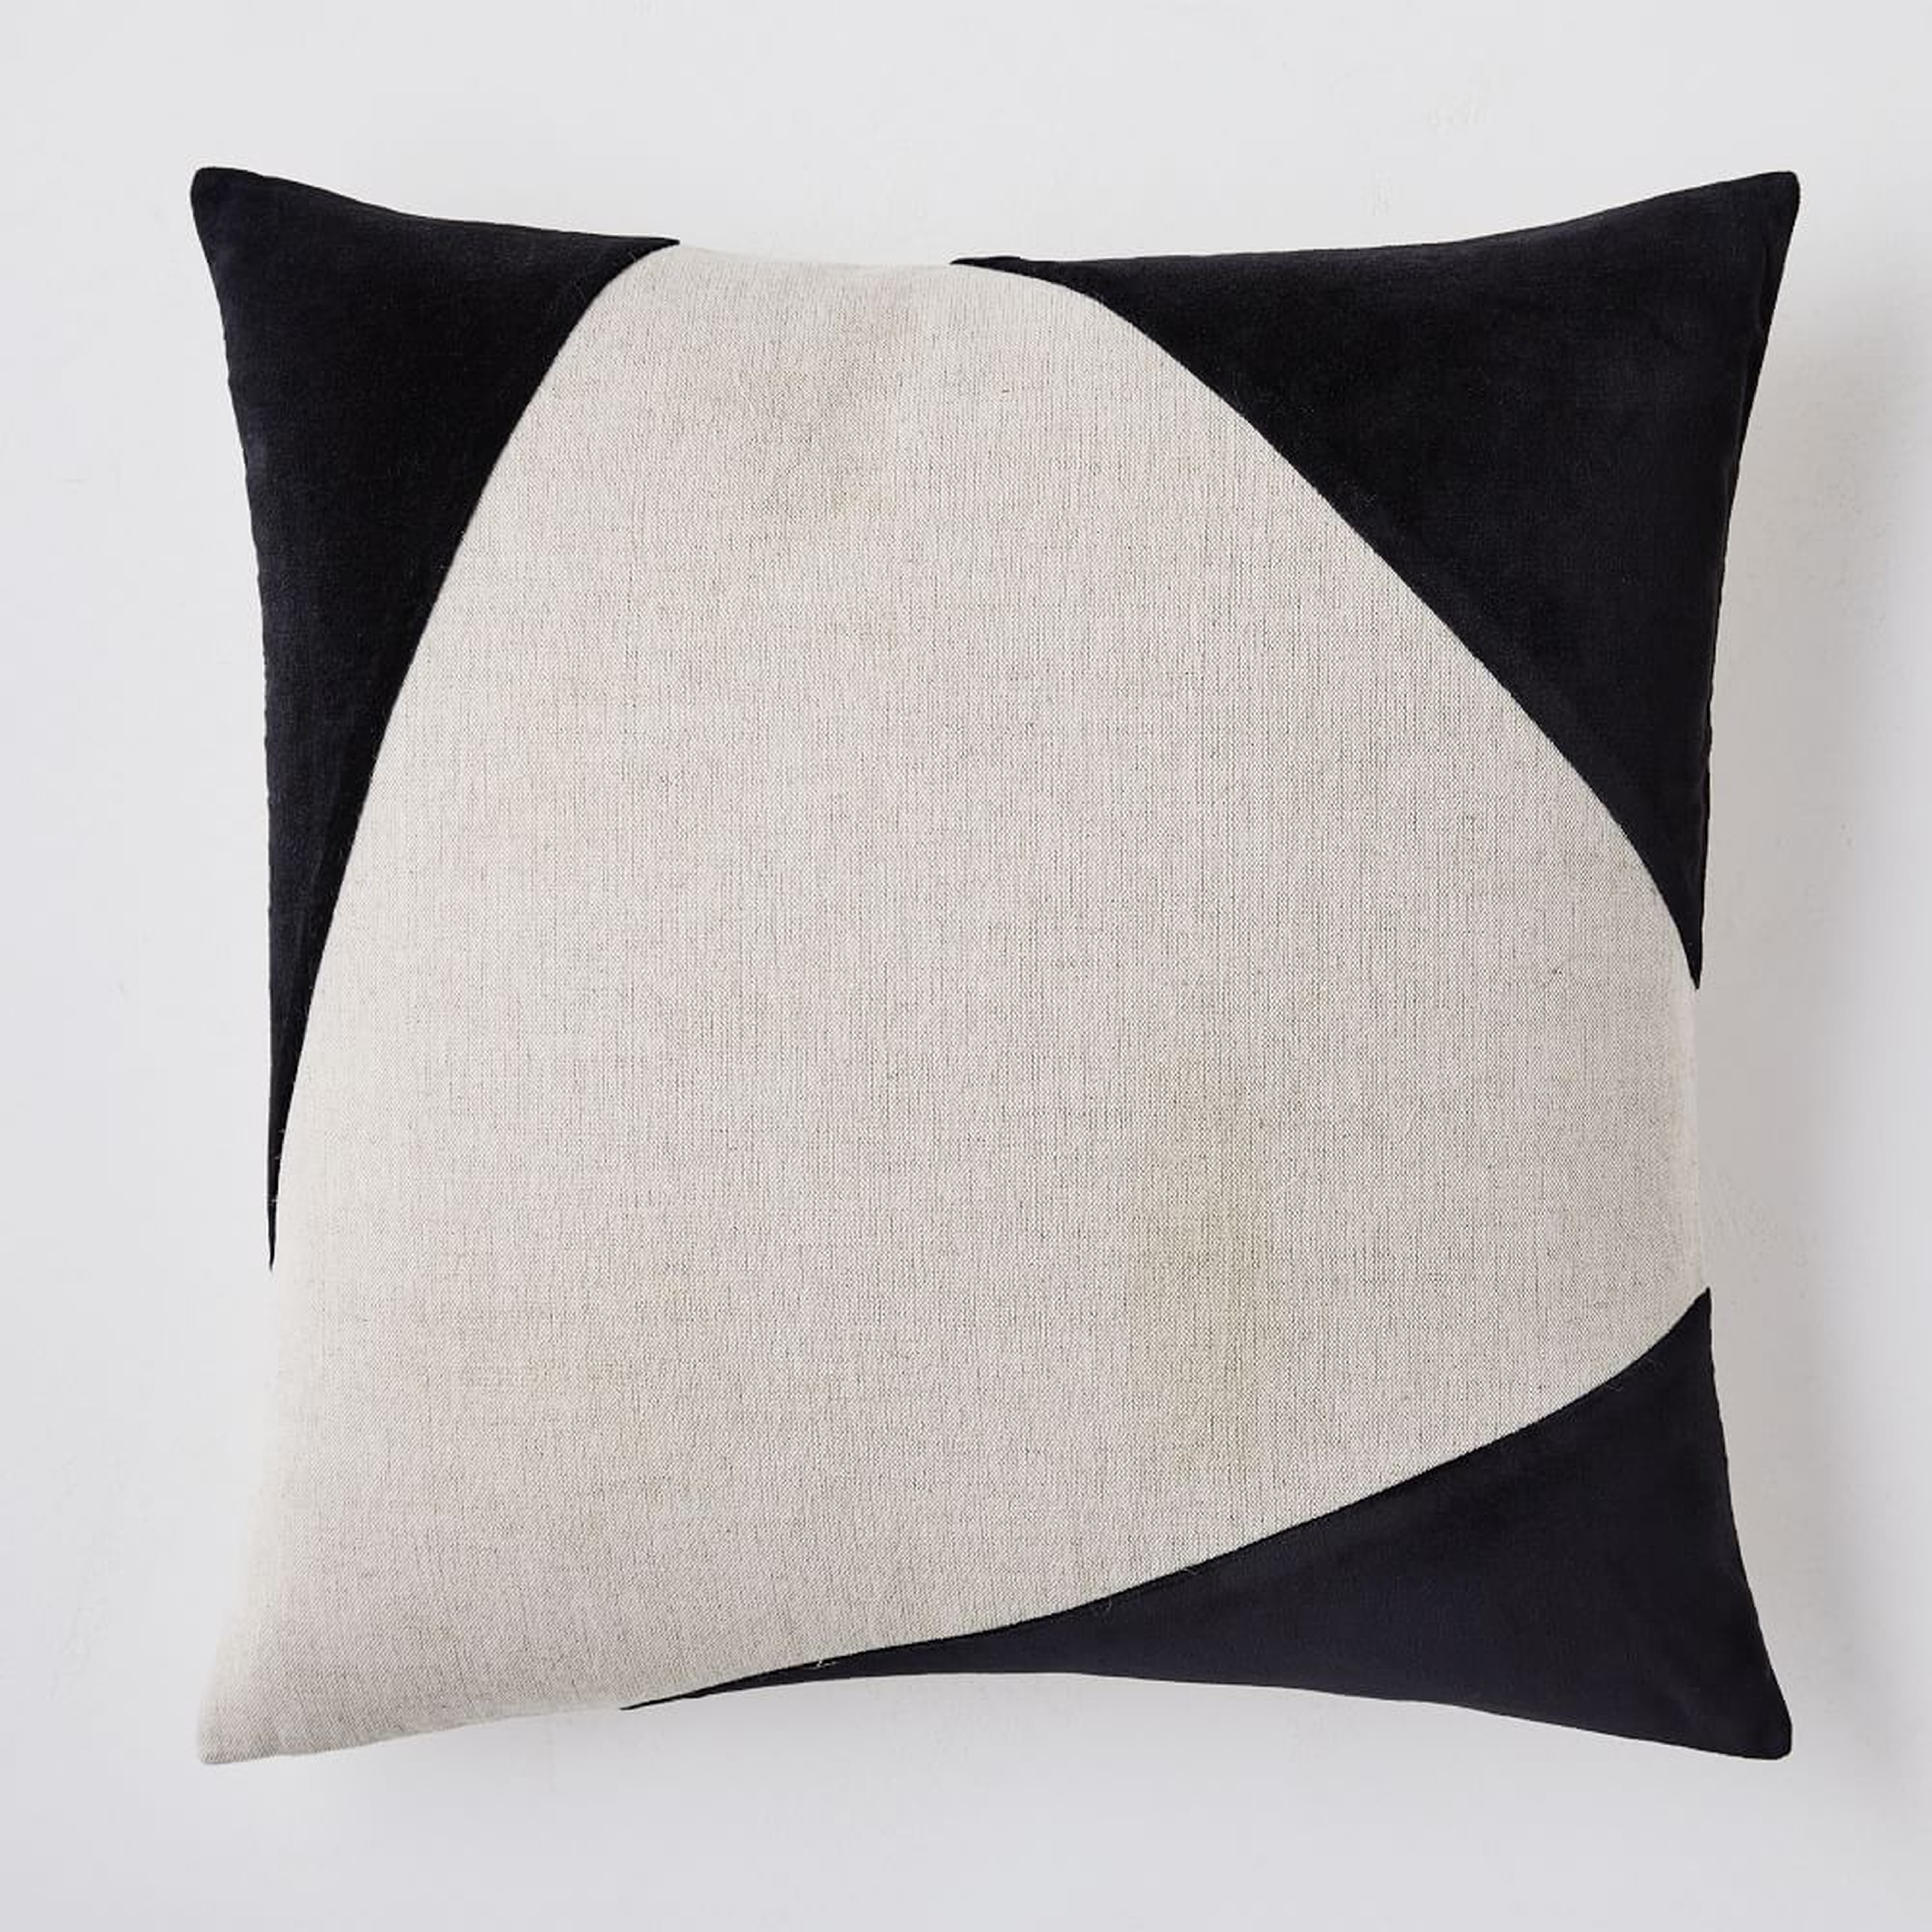 Cotton Linen + Velvet Corners Pillow Cover, 24"x24", Black - West Elm